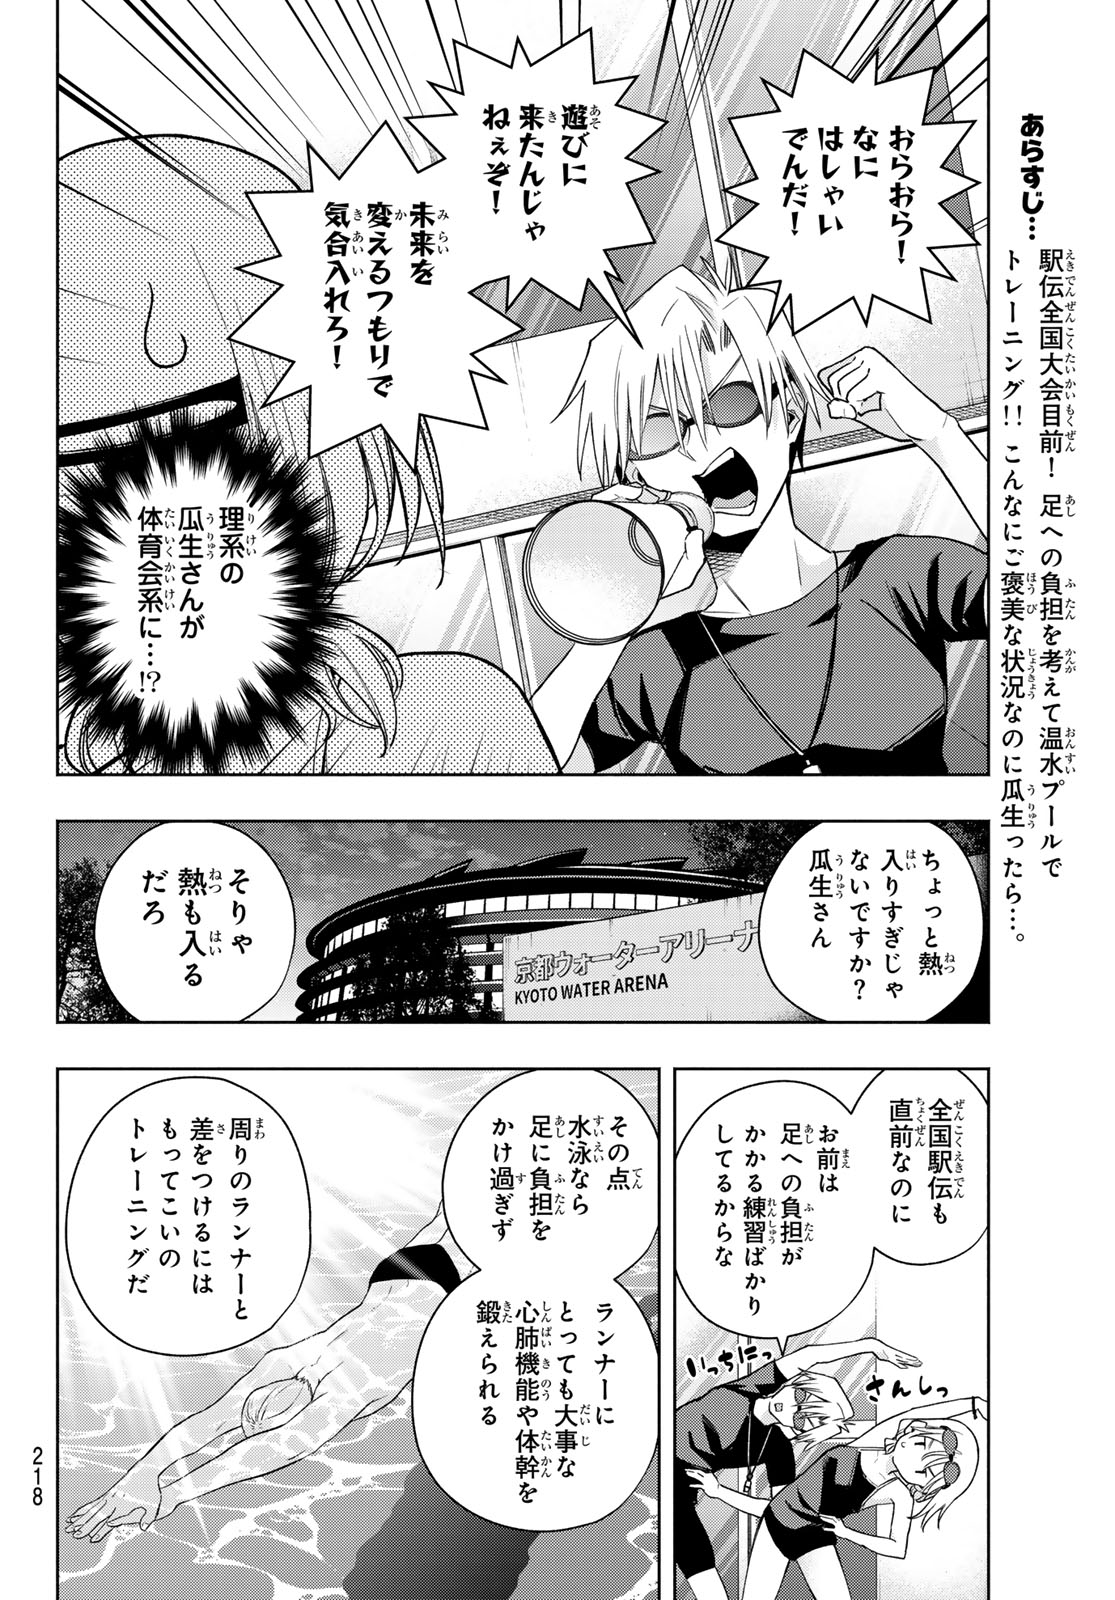 Amagami-san Chi no Enmusubi - Chapter 137 - Page 2